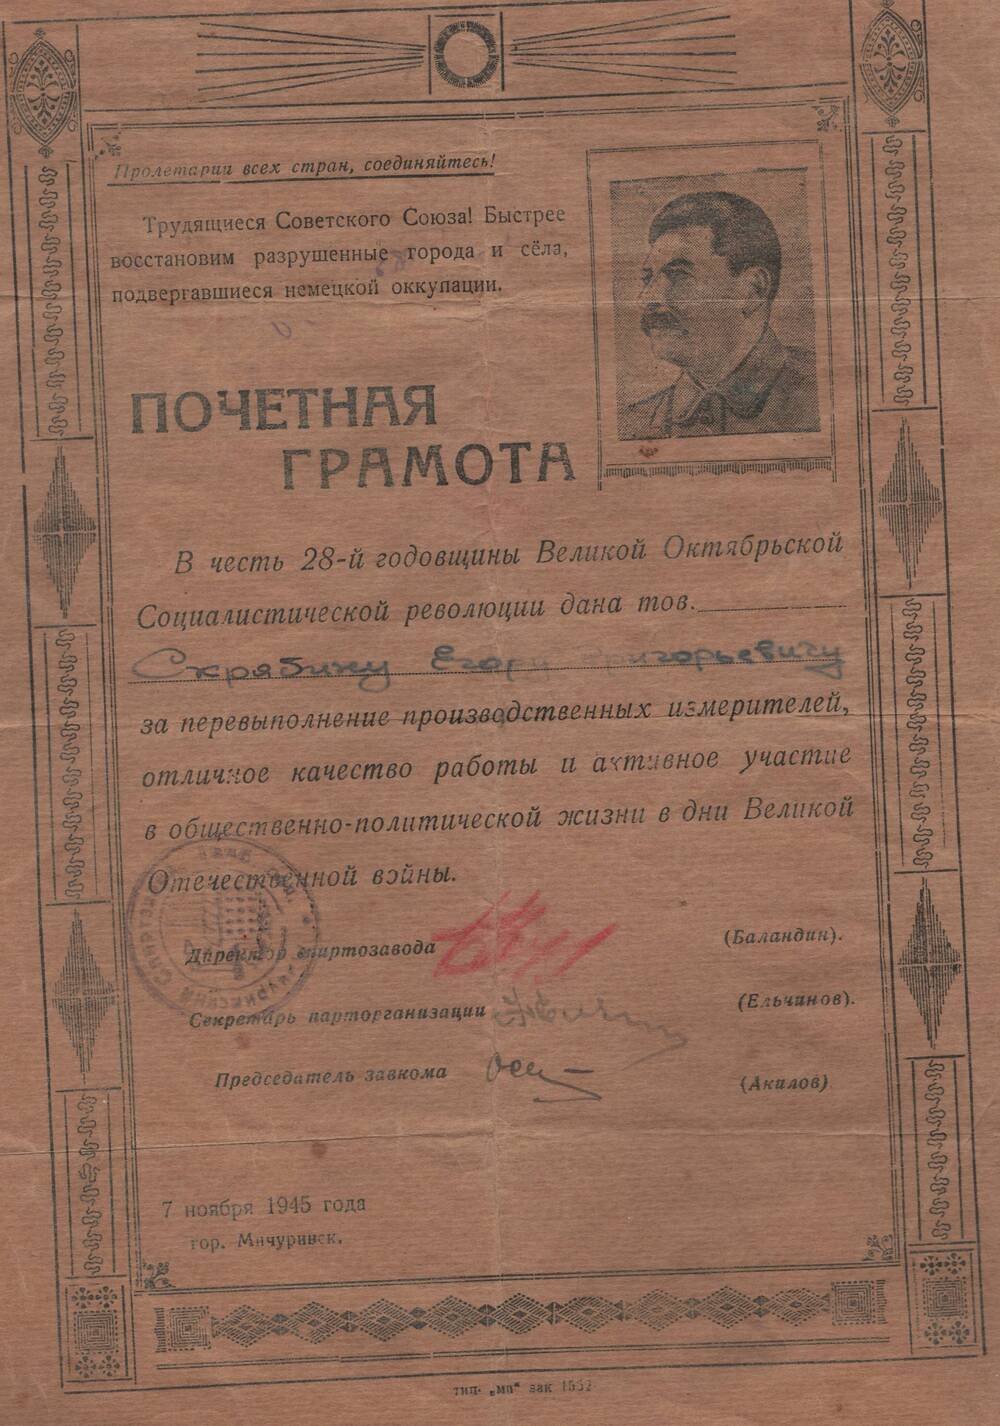 Почетная грамота, врученная Скрябину Егору Григорьевичу, за перевыполнение производственных измерителей